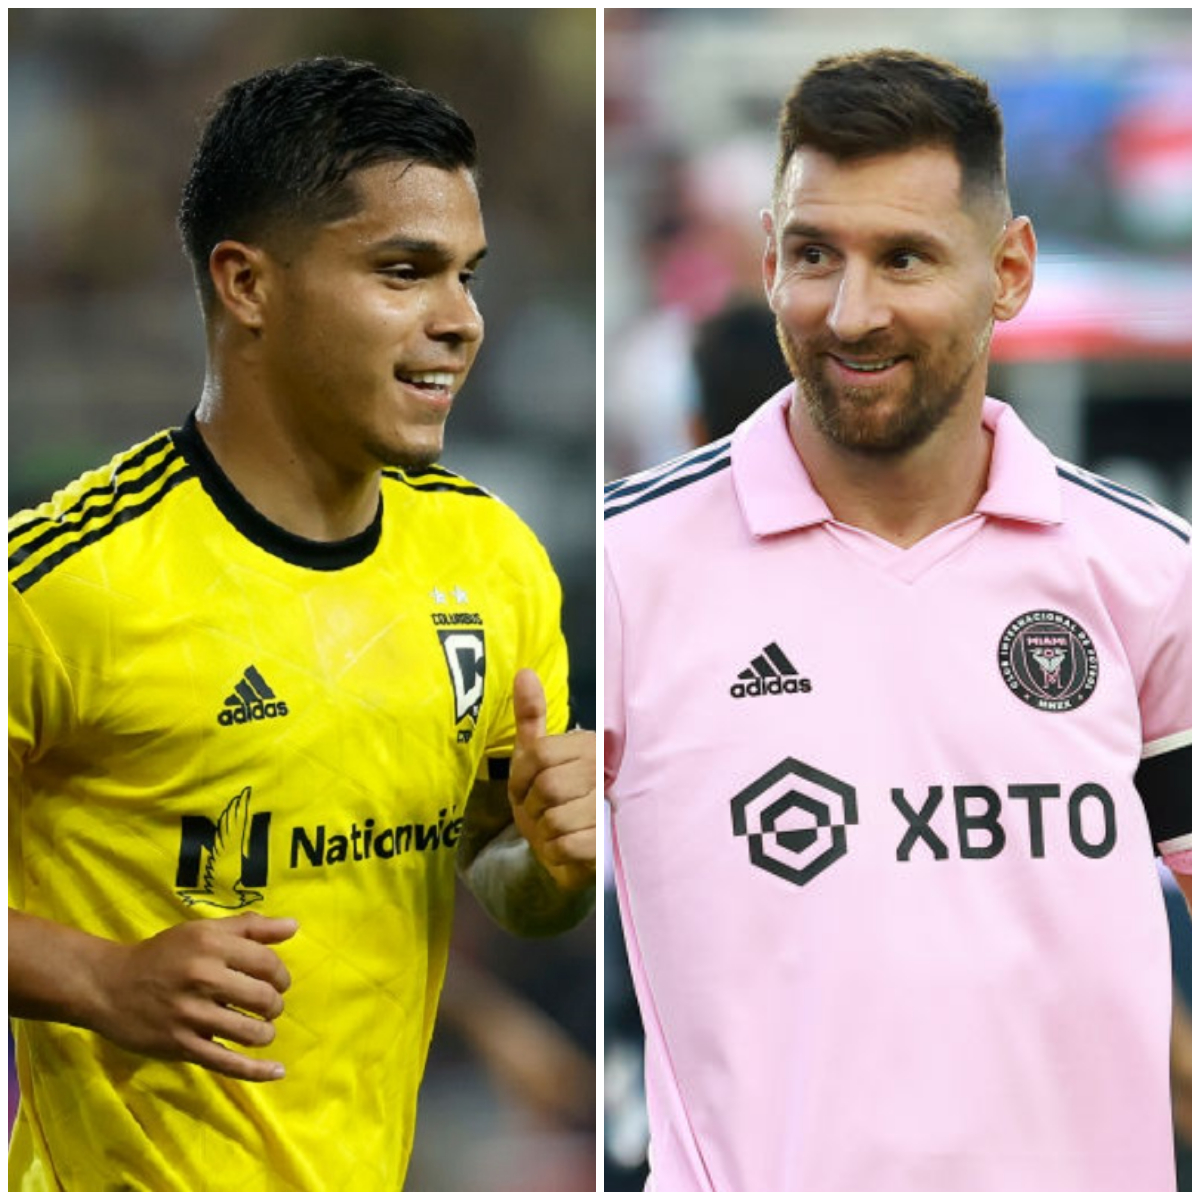 El delantero colombiano 'Cucho' Hernández pelará contra Messi el premio a jugador más valioso de la MLS 2023. Acá, todos los detalles.